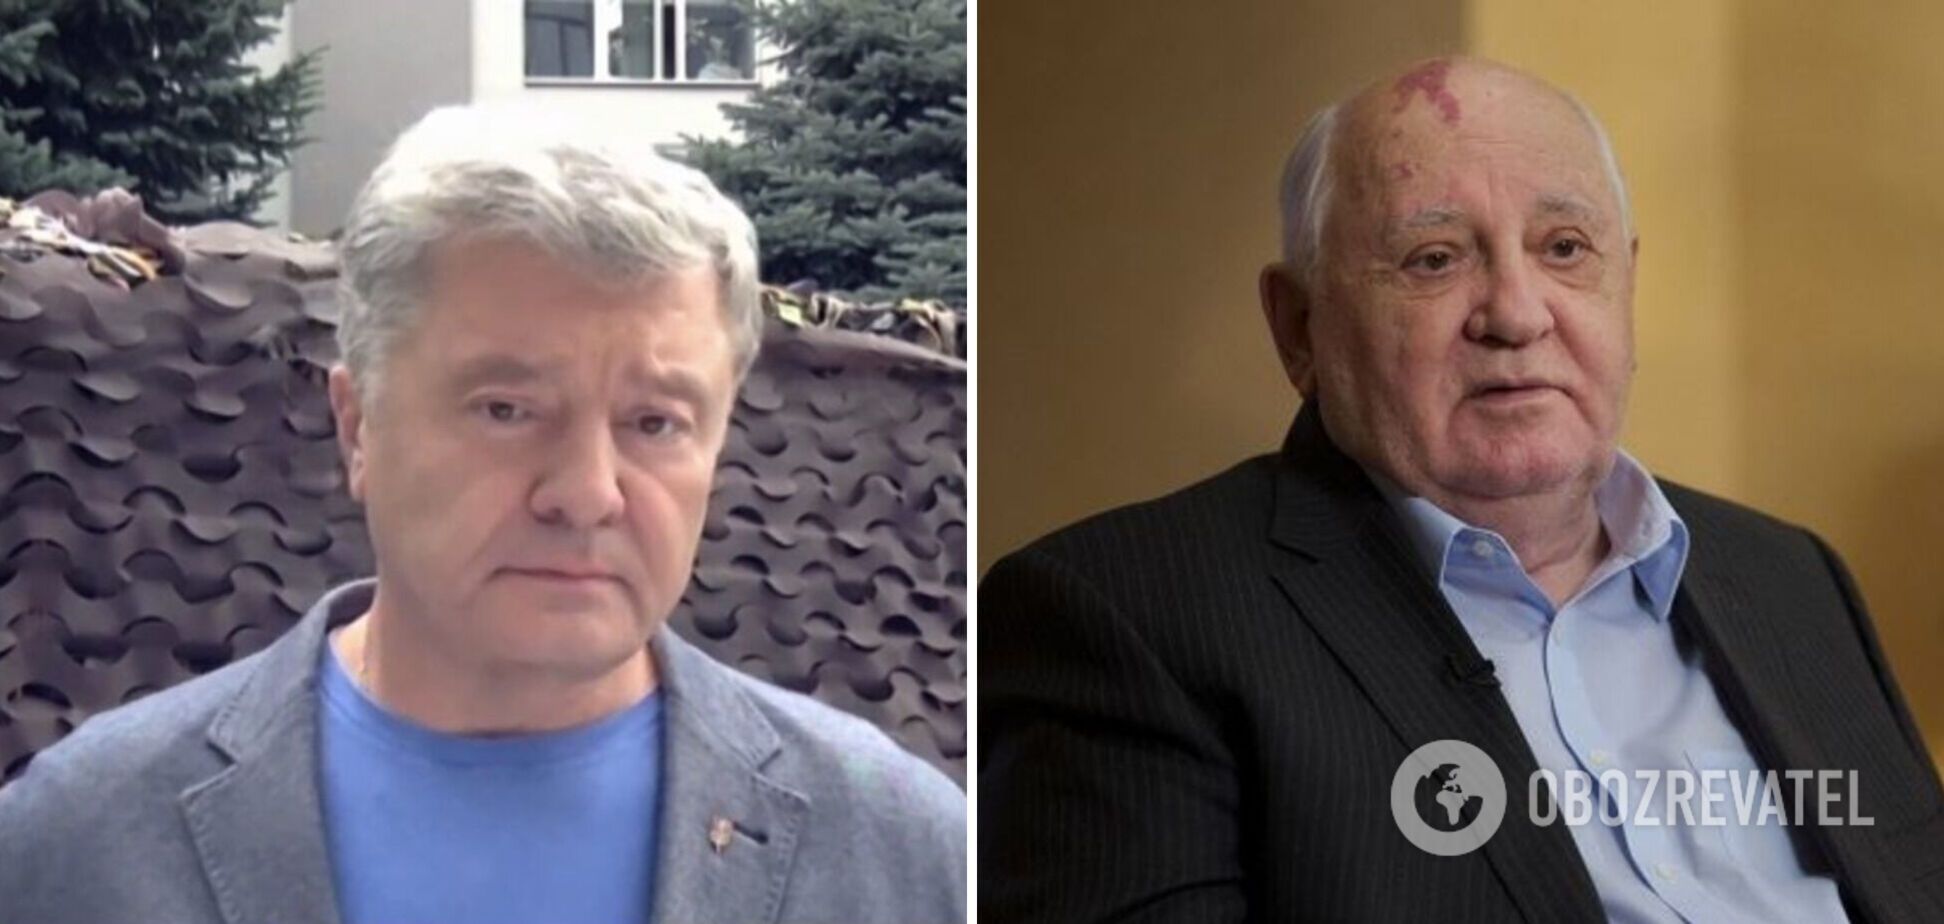 Горбачев поддержал аннексию Крыма и агрессию РФ против Украины, несмотря на все достижения на международной арене, – Порошенко для Sky News